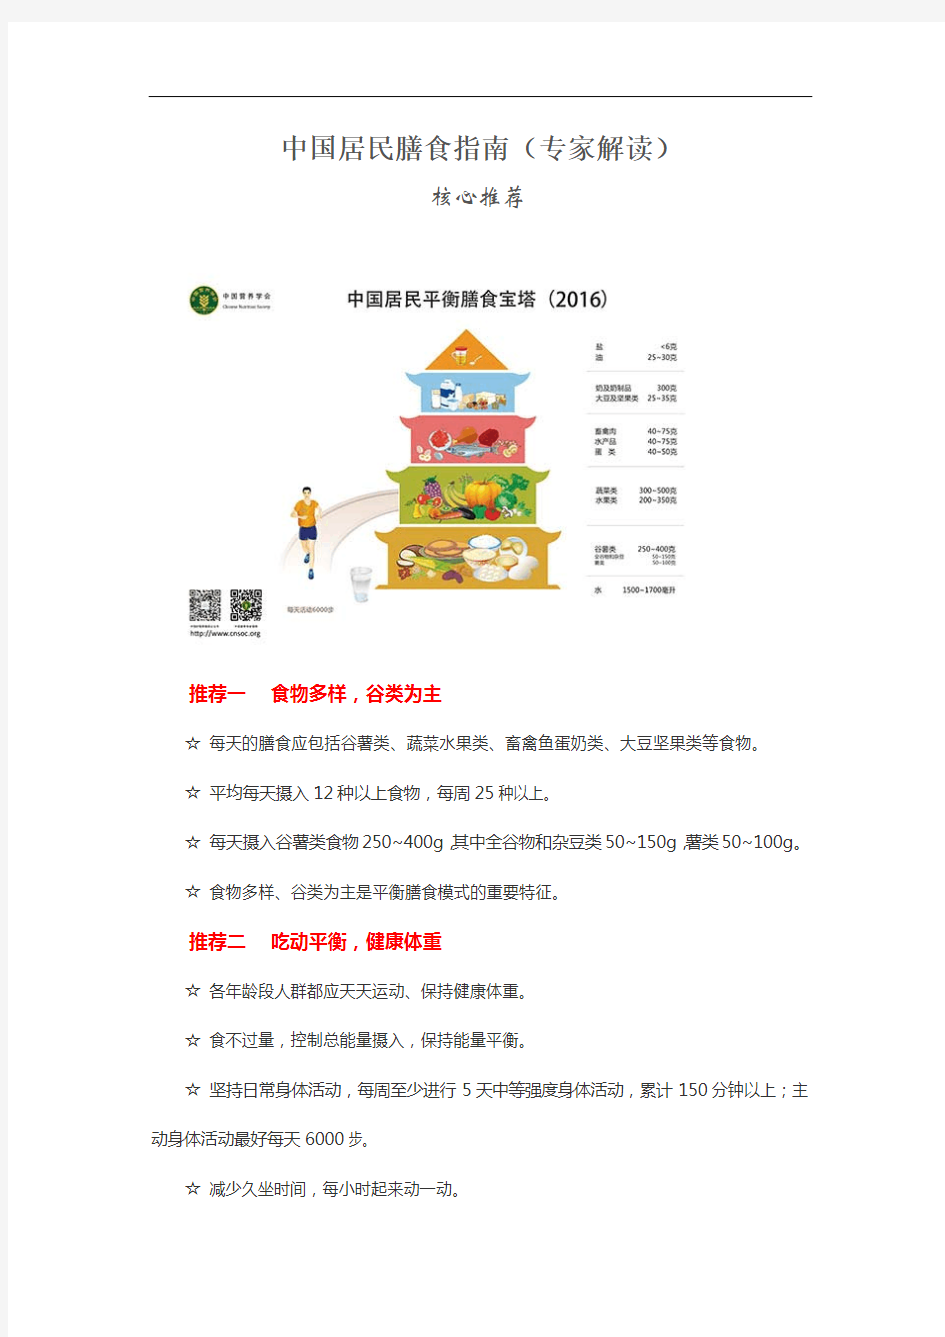 中国居民膳食指南(专家解读)